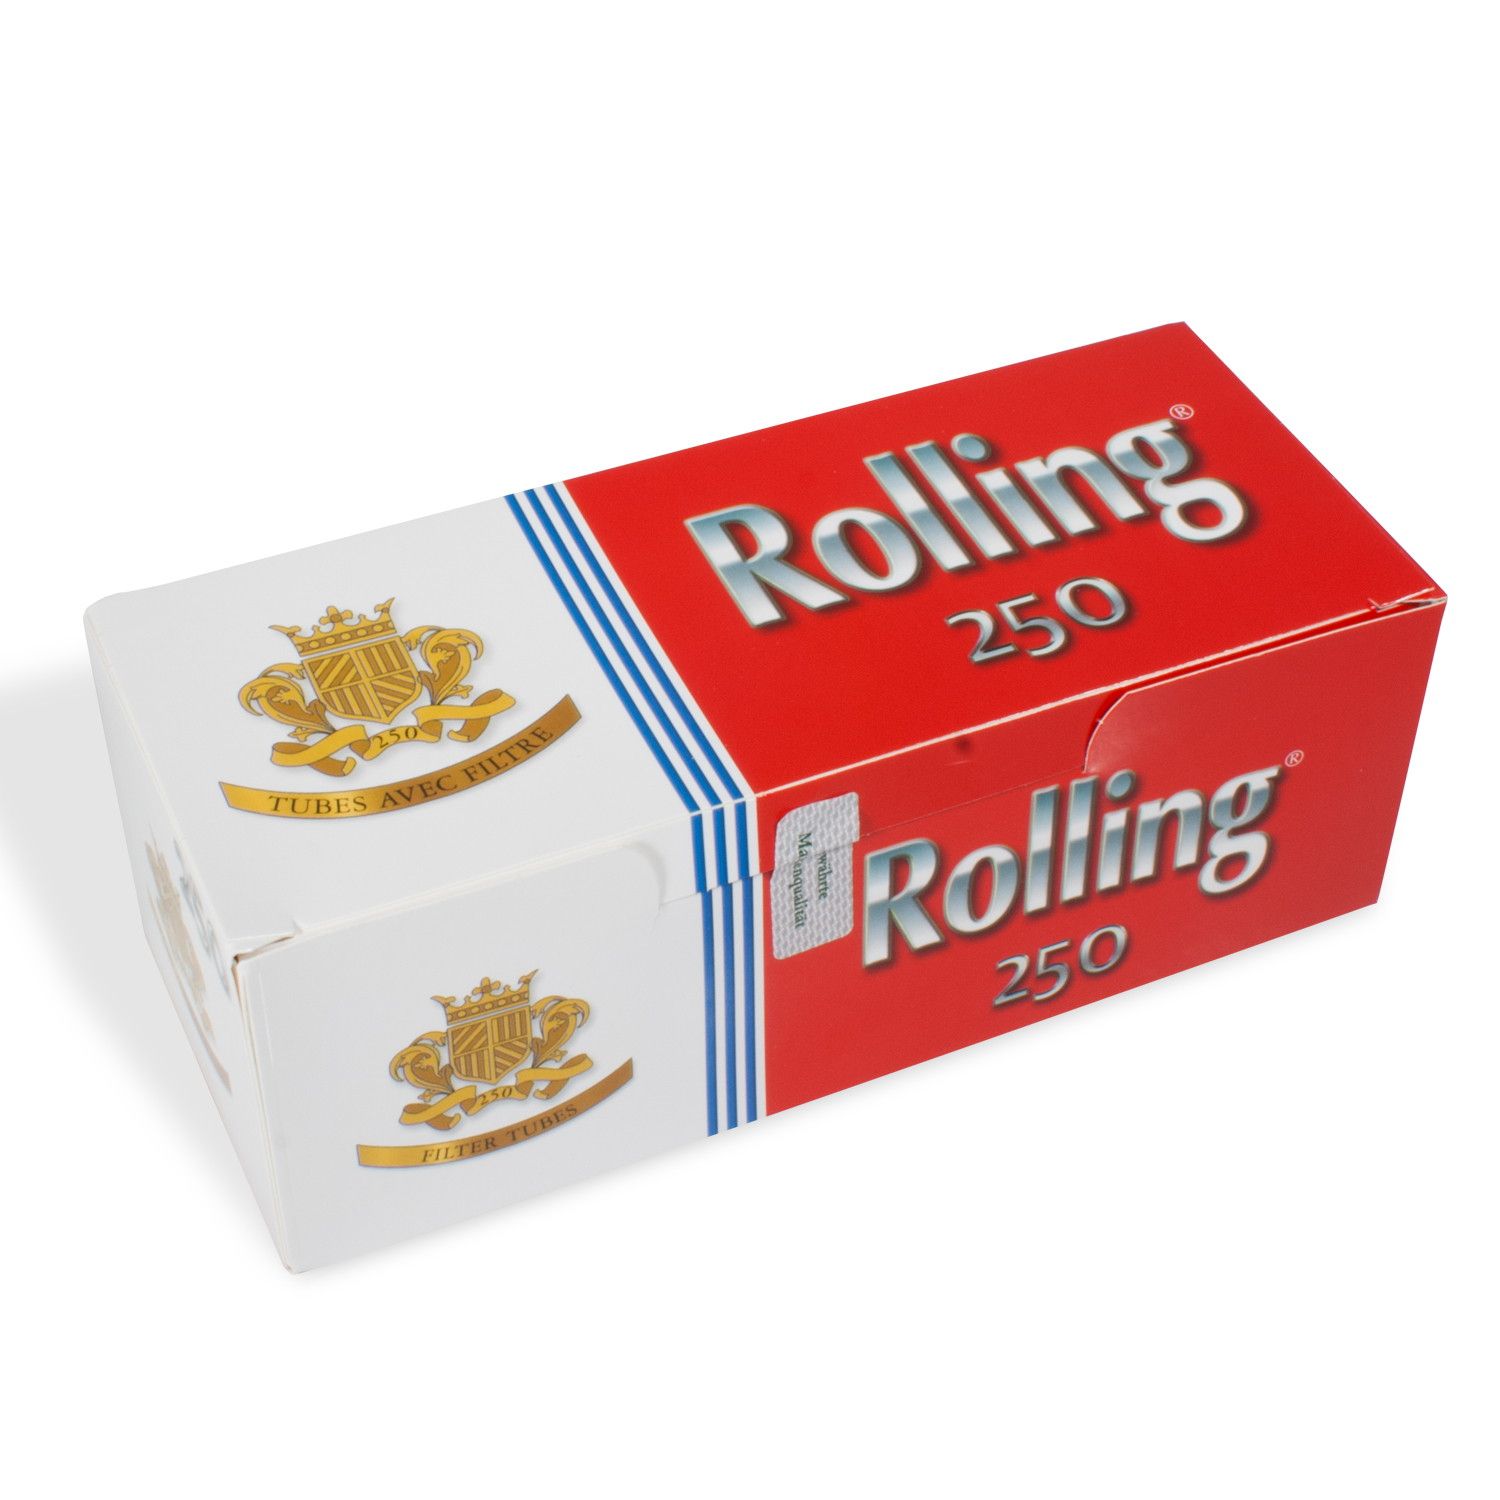 Rolling Filterhülsen - Packung mit 250 Stück 